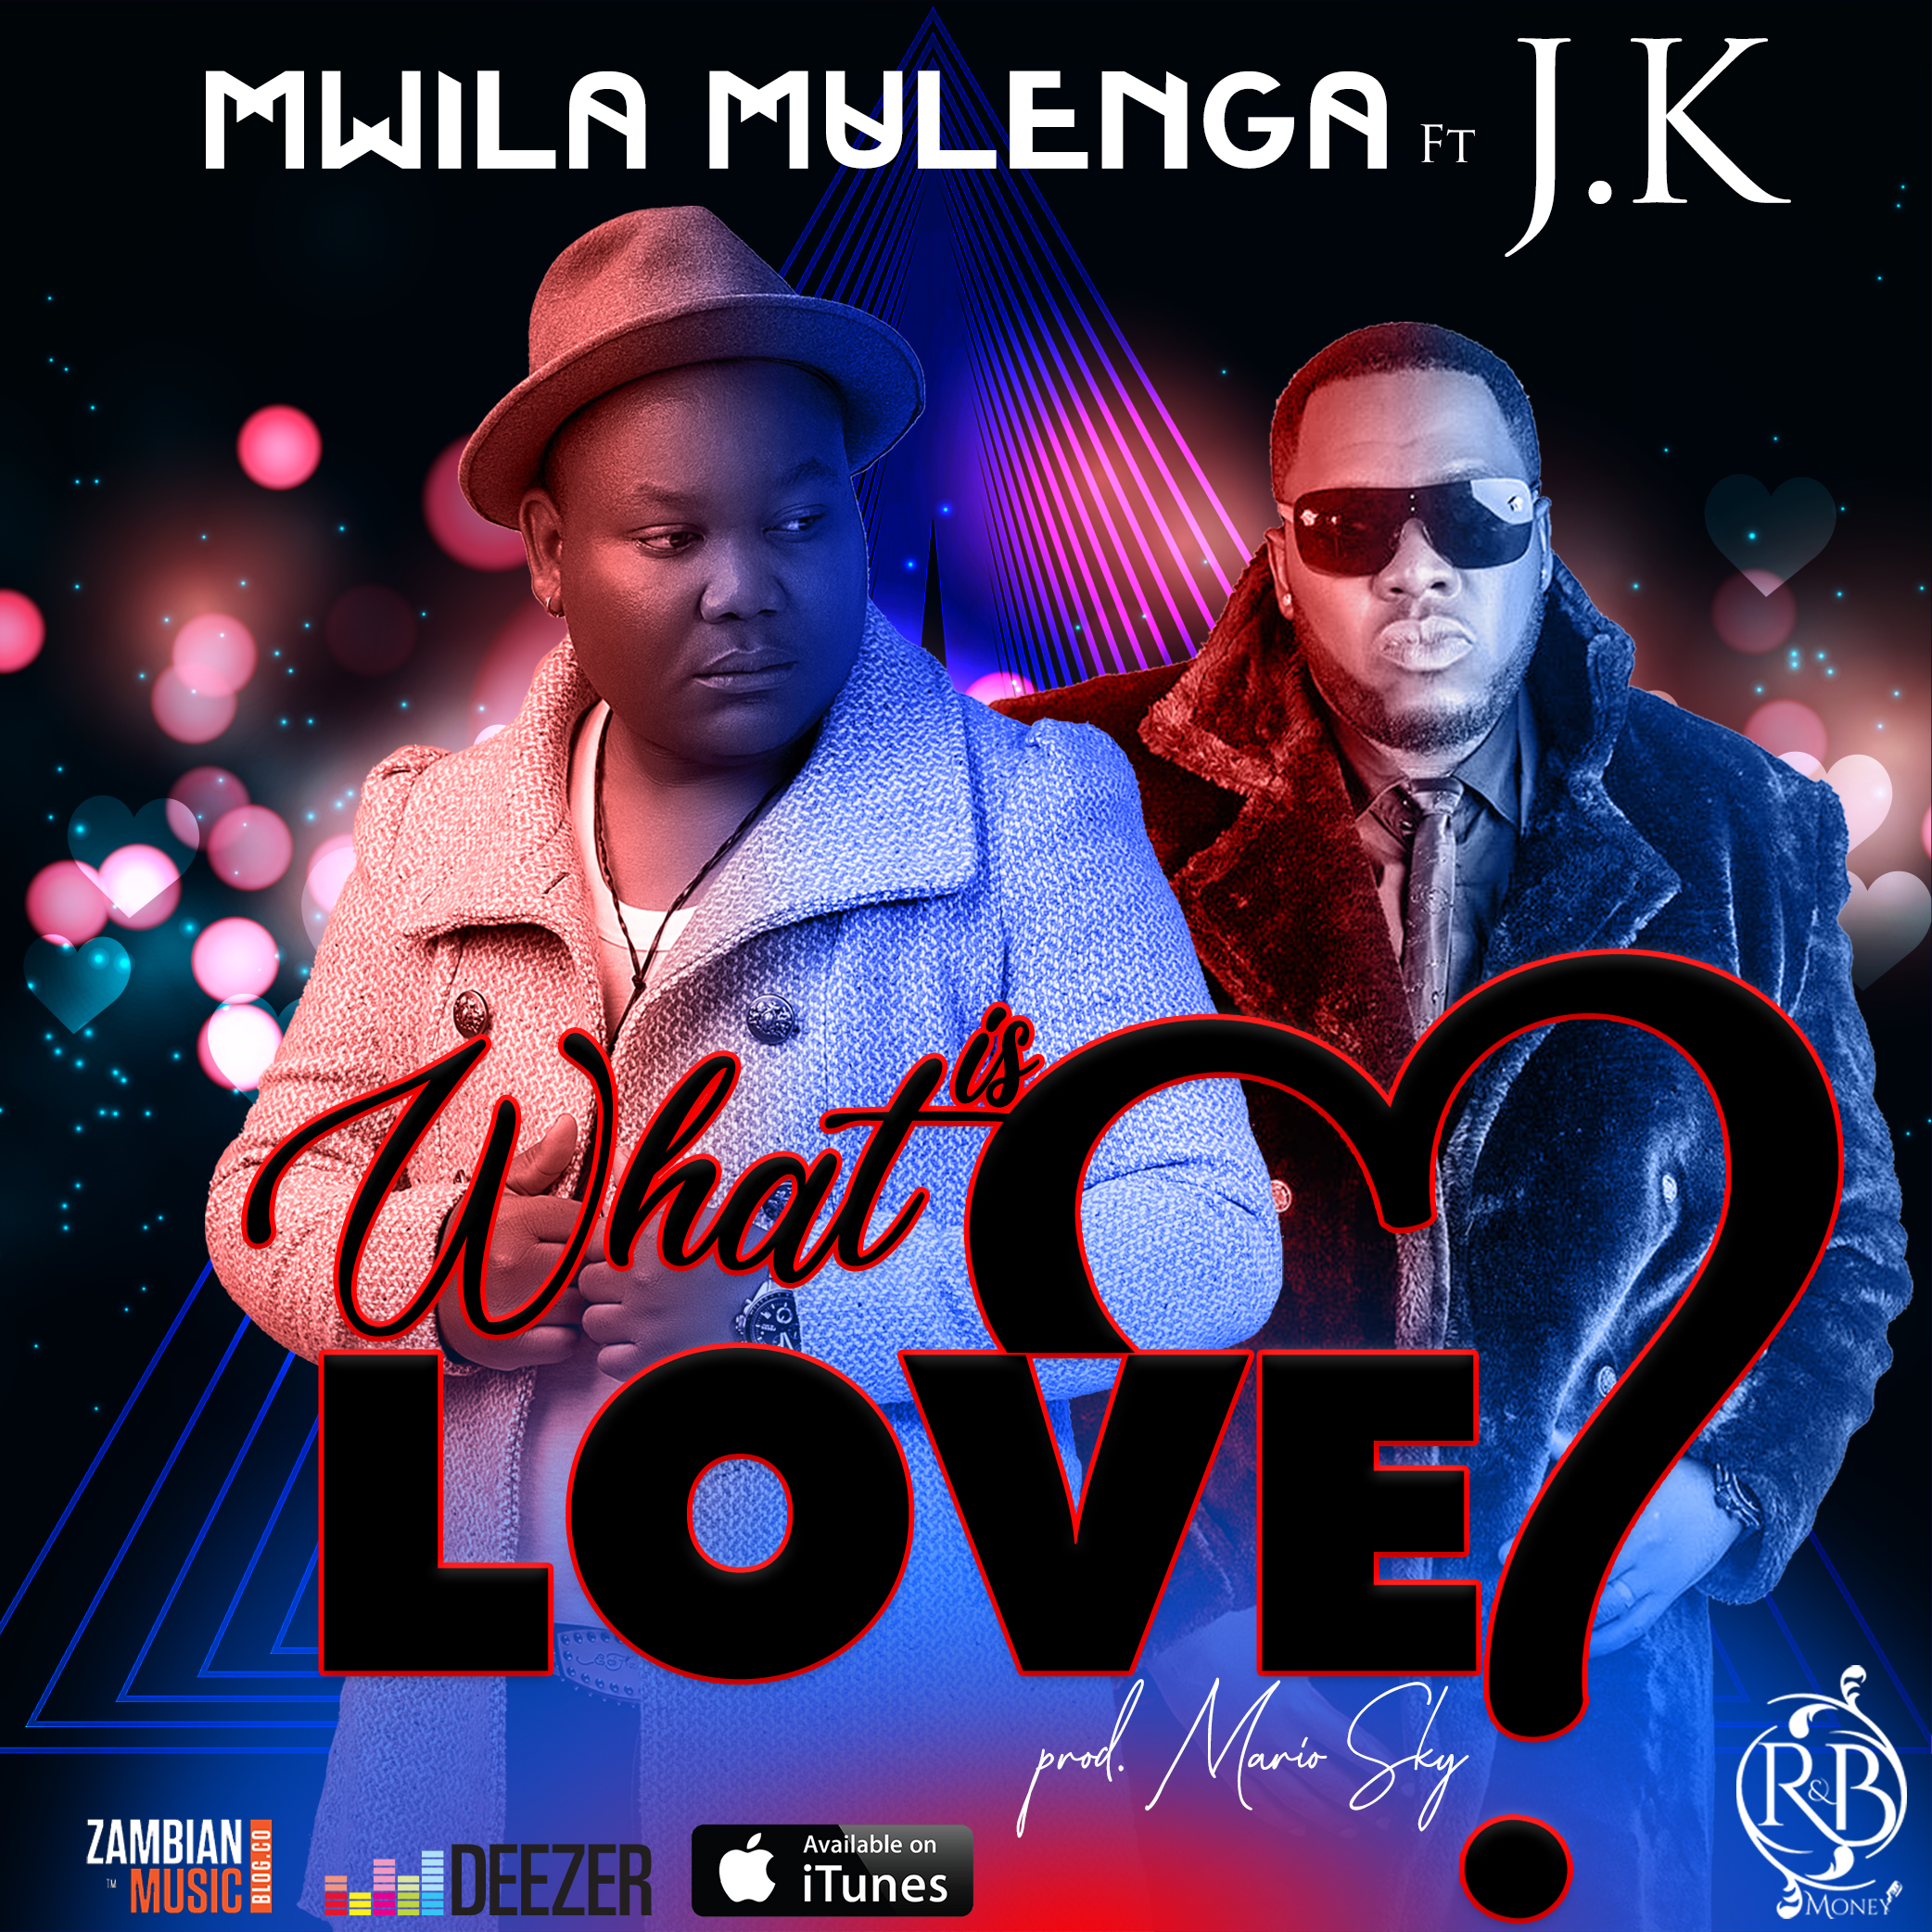 Mwila Mulenga Ft. JK - "What Is Love"